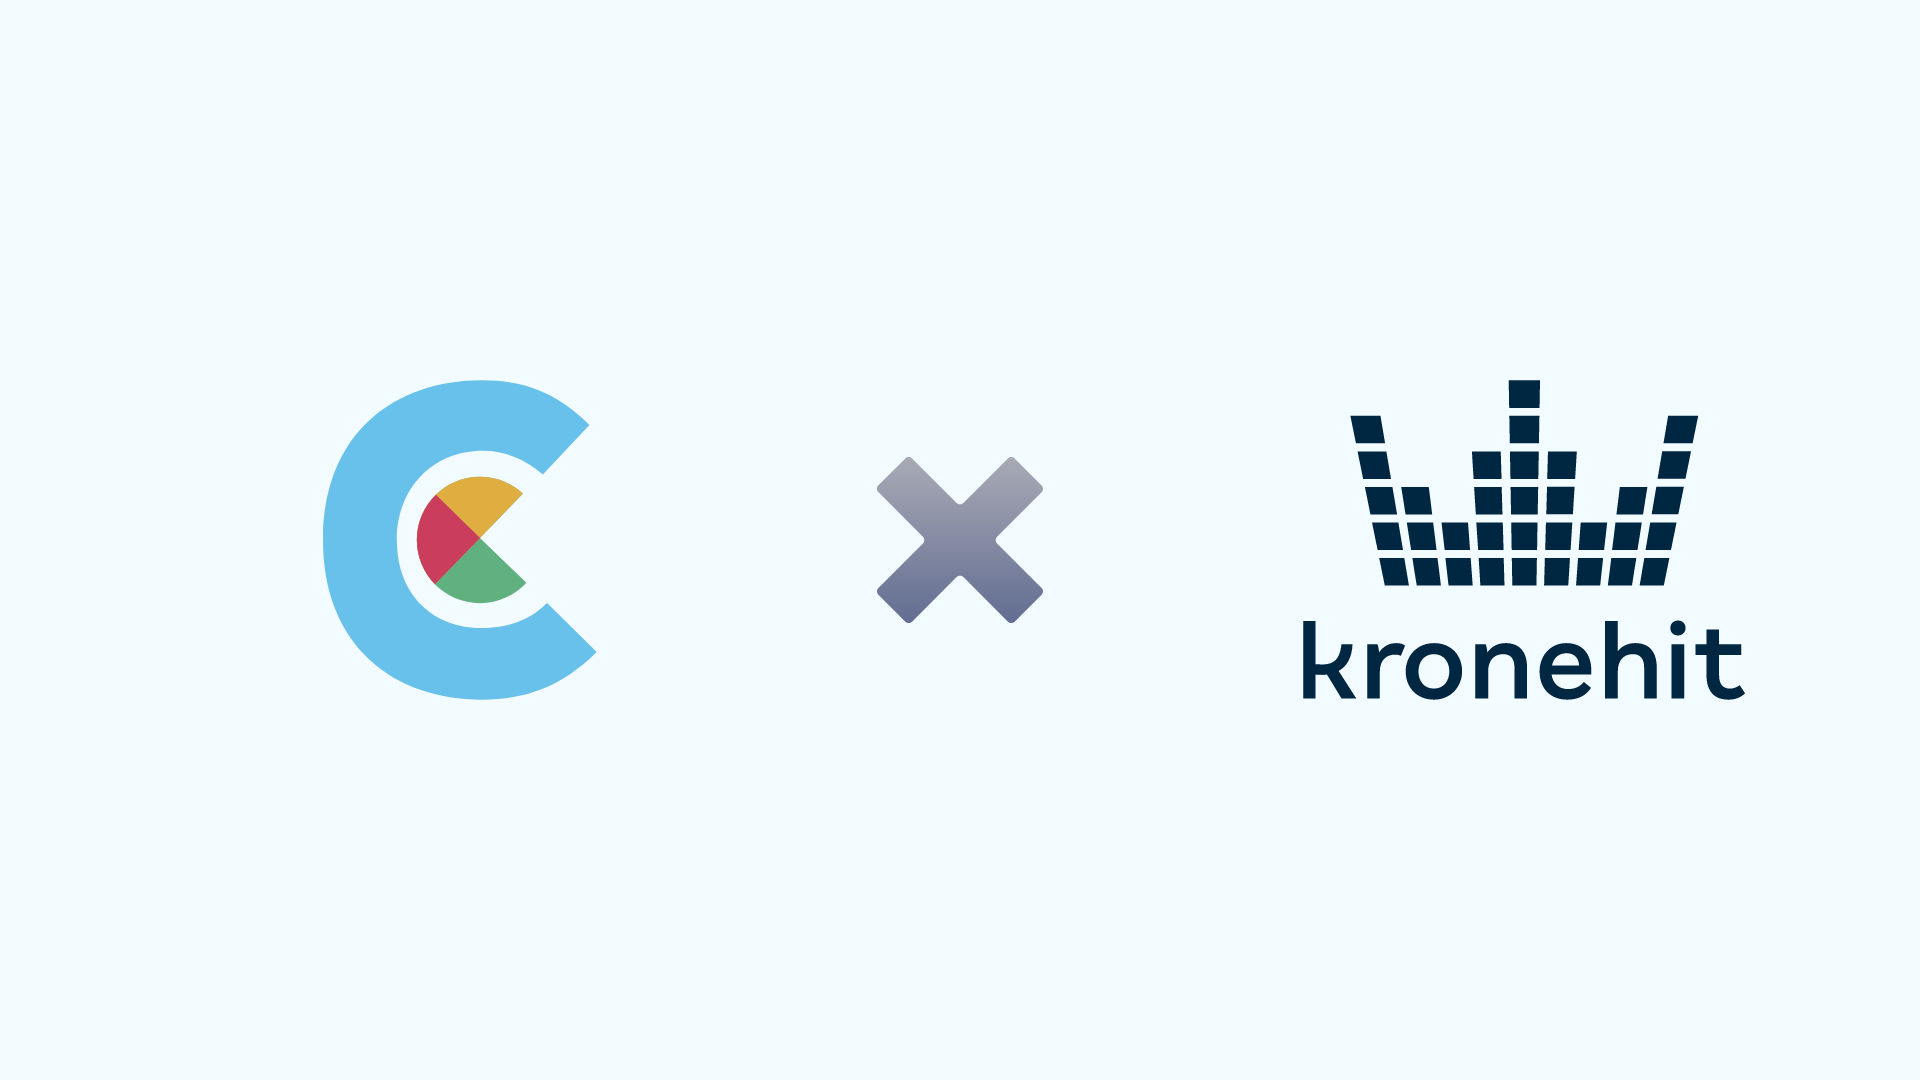 A Captcha.eu megnyeri a Kronehitet, mint fő vásárlót captcha megoldásaival